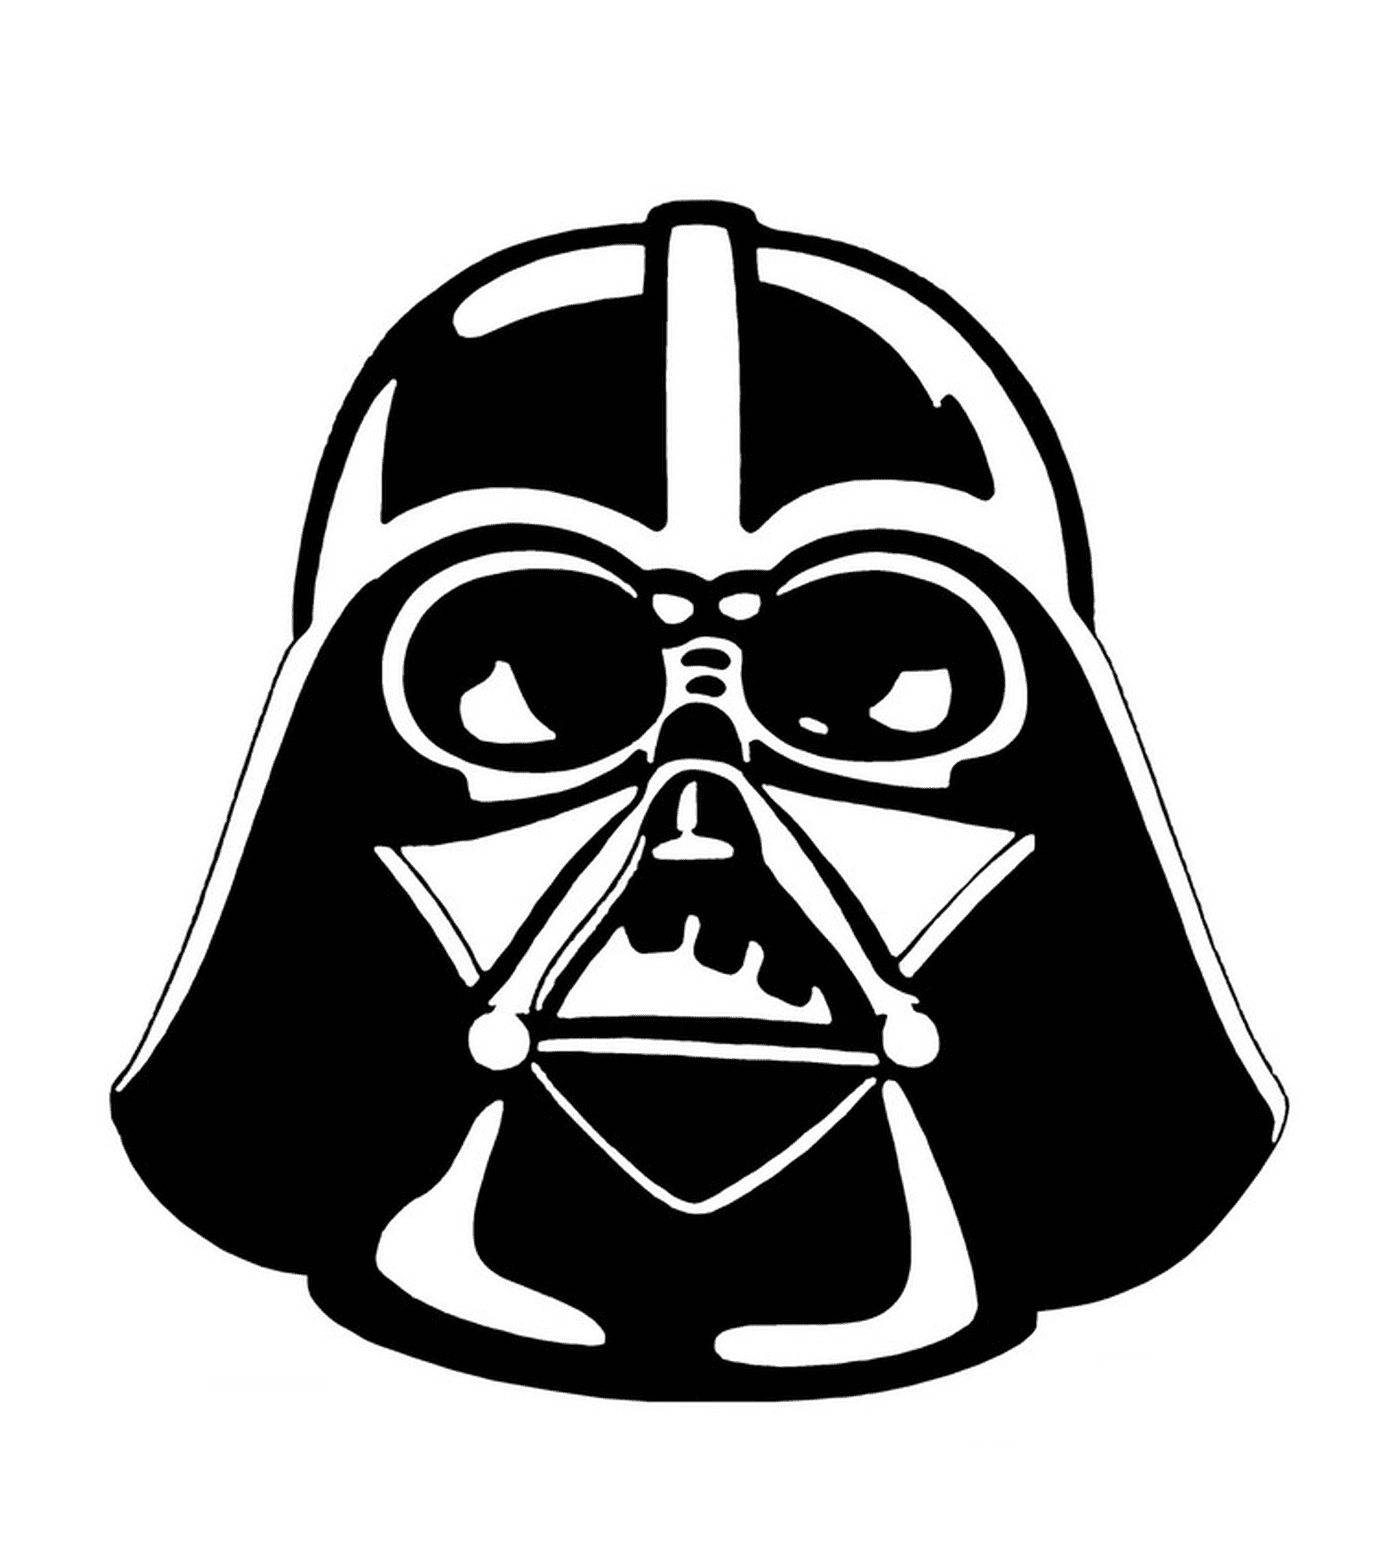  Retrato de Vader escuro de Star Wars 